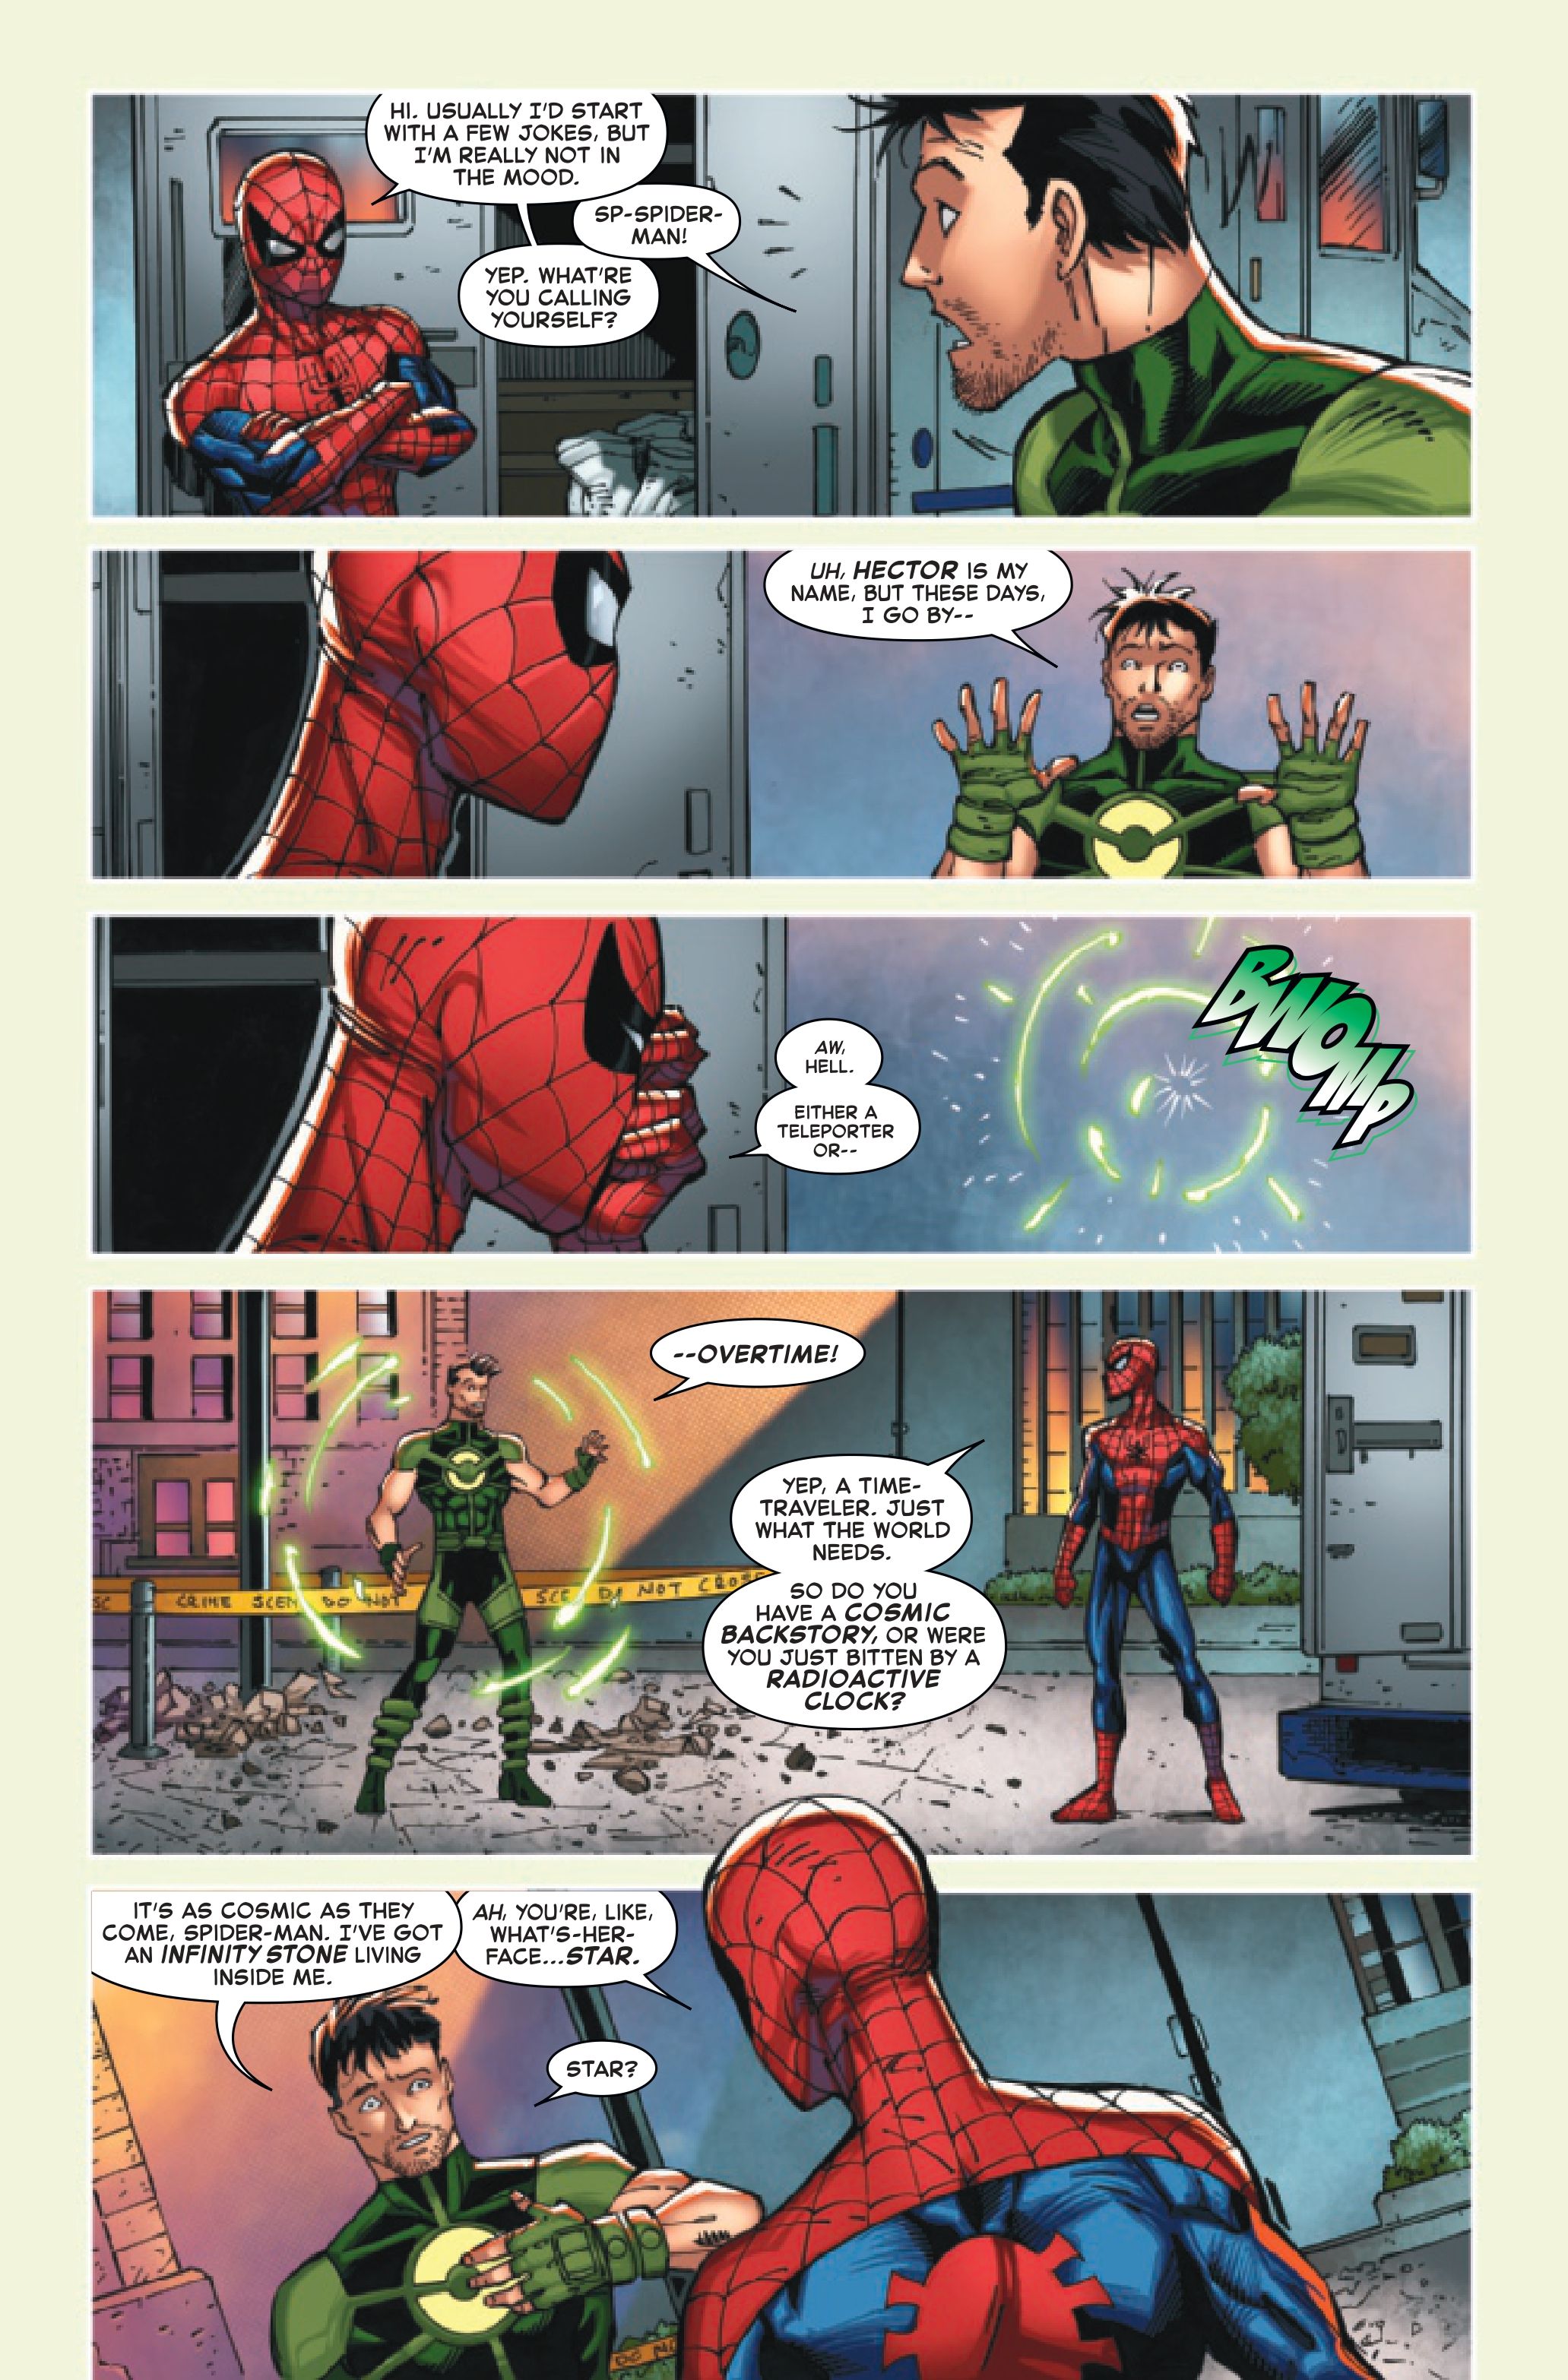 ЭКСКЛЮЗИВ: Человек-паук должен спасти обладателя Камня бесконечности от Таноса